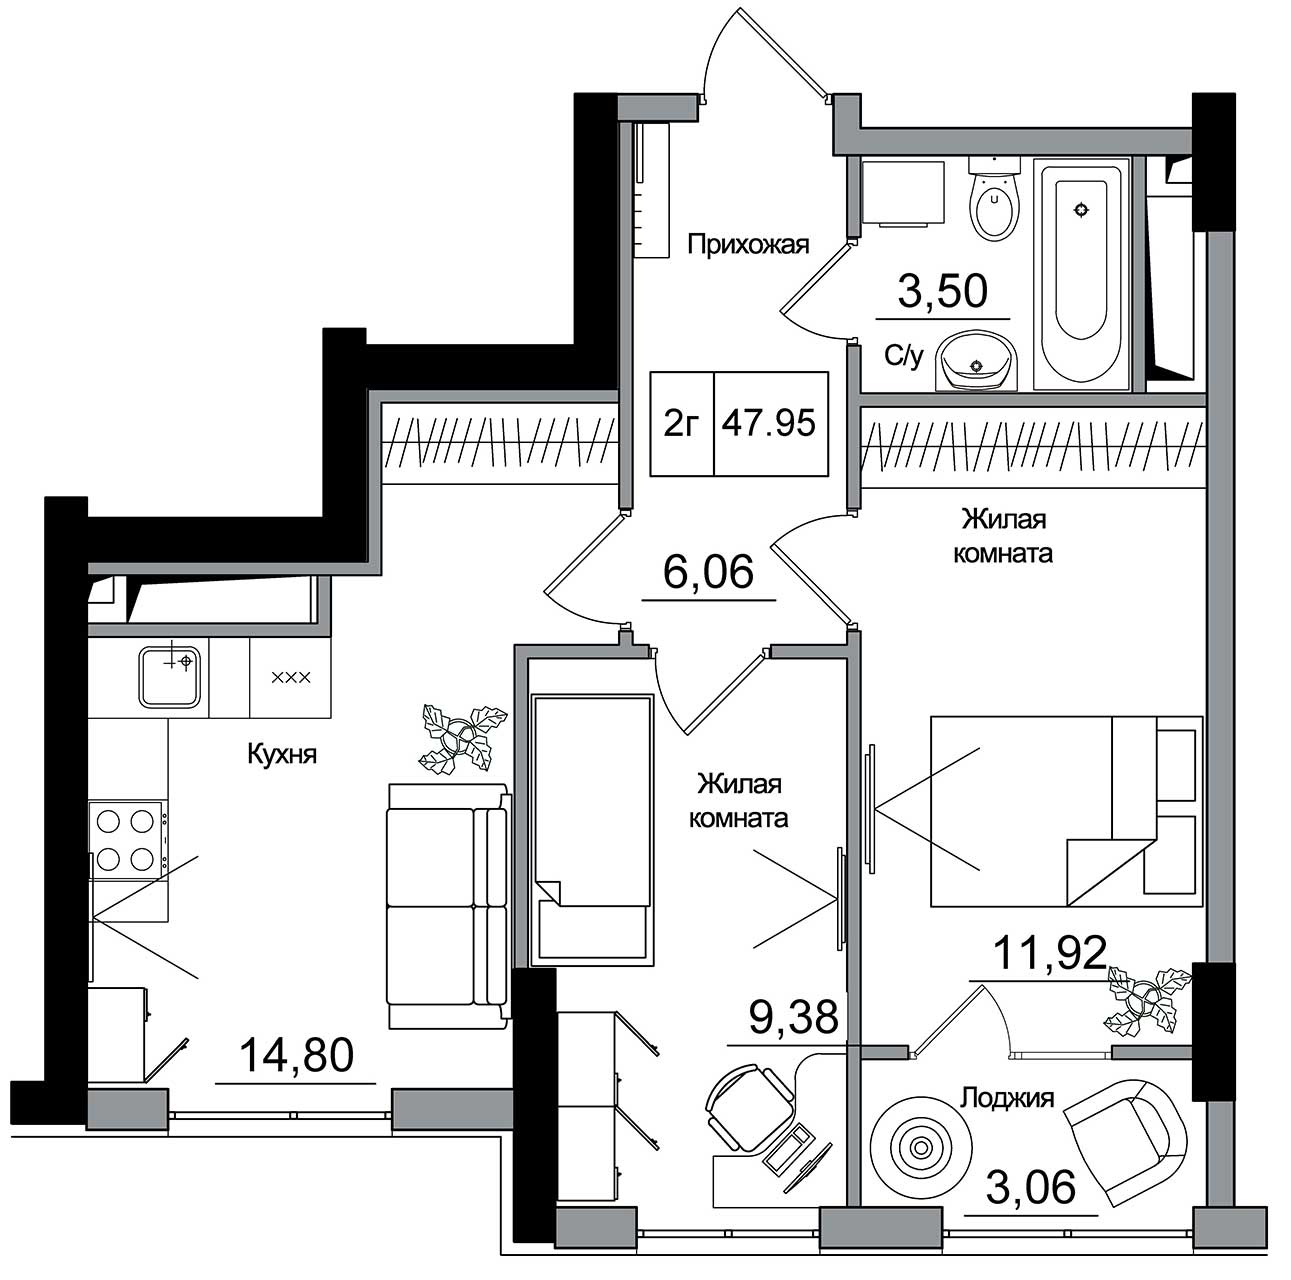 Планування 2-к квартира площею 47.95м2, AB-16-02/00014.